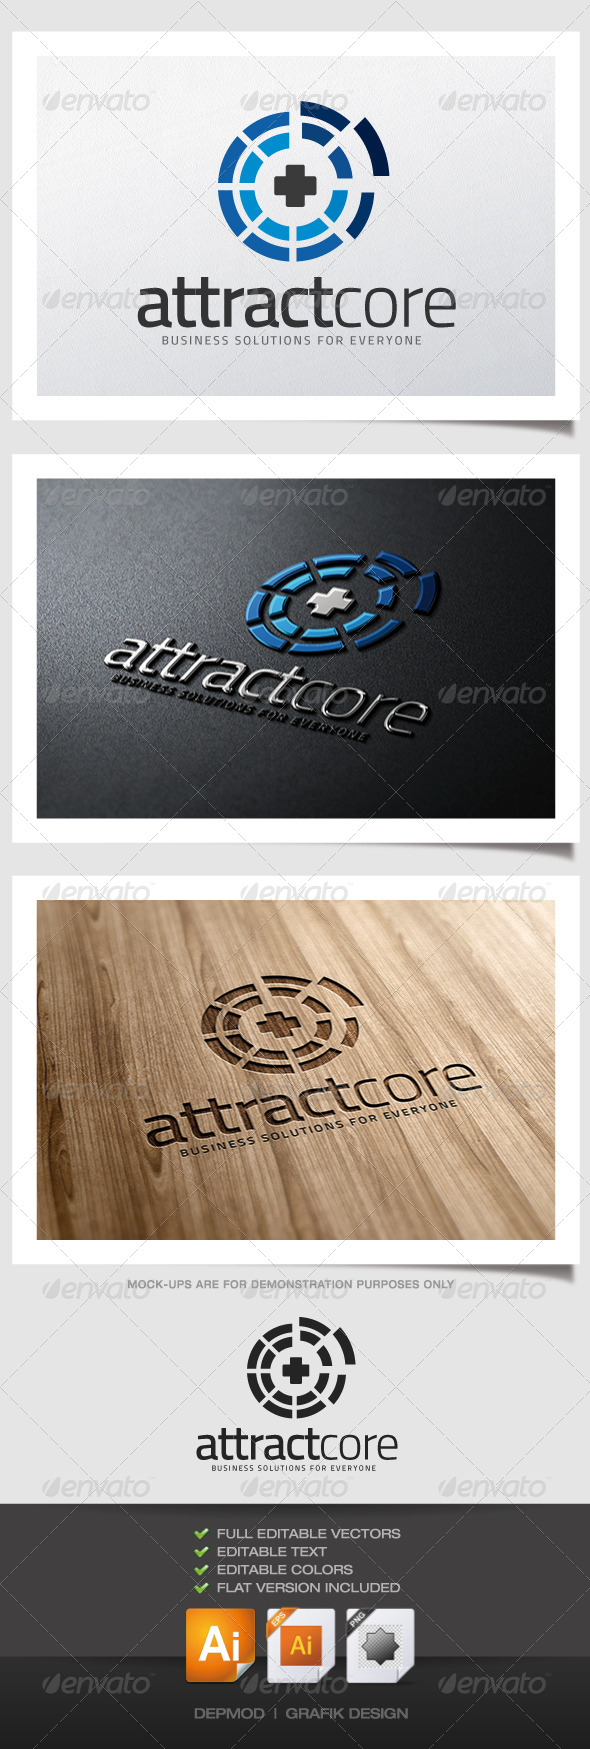 Attract Core Logo